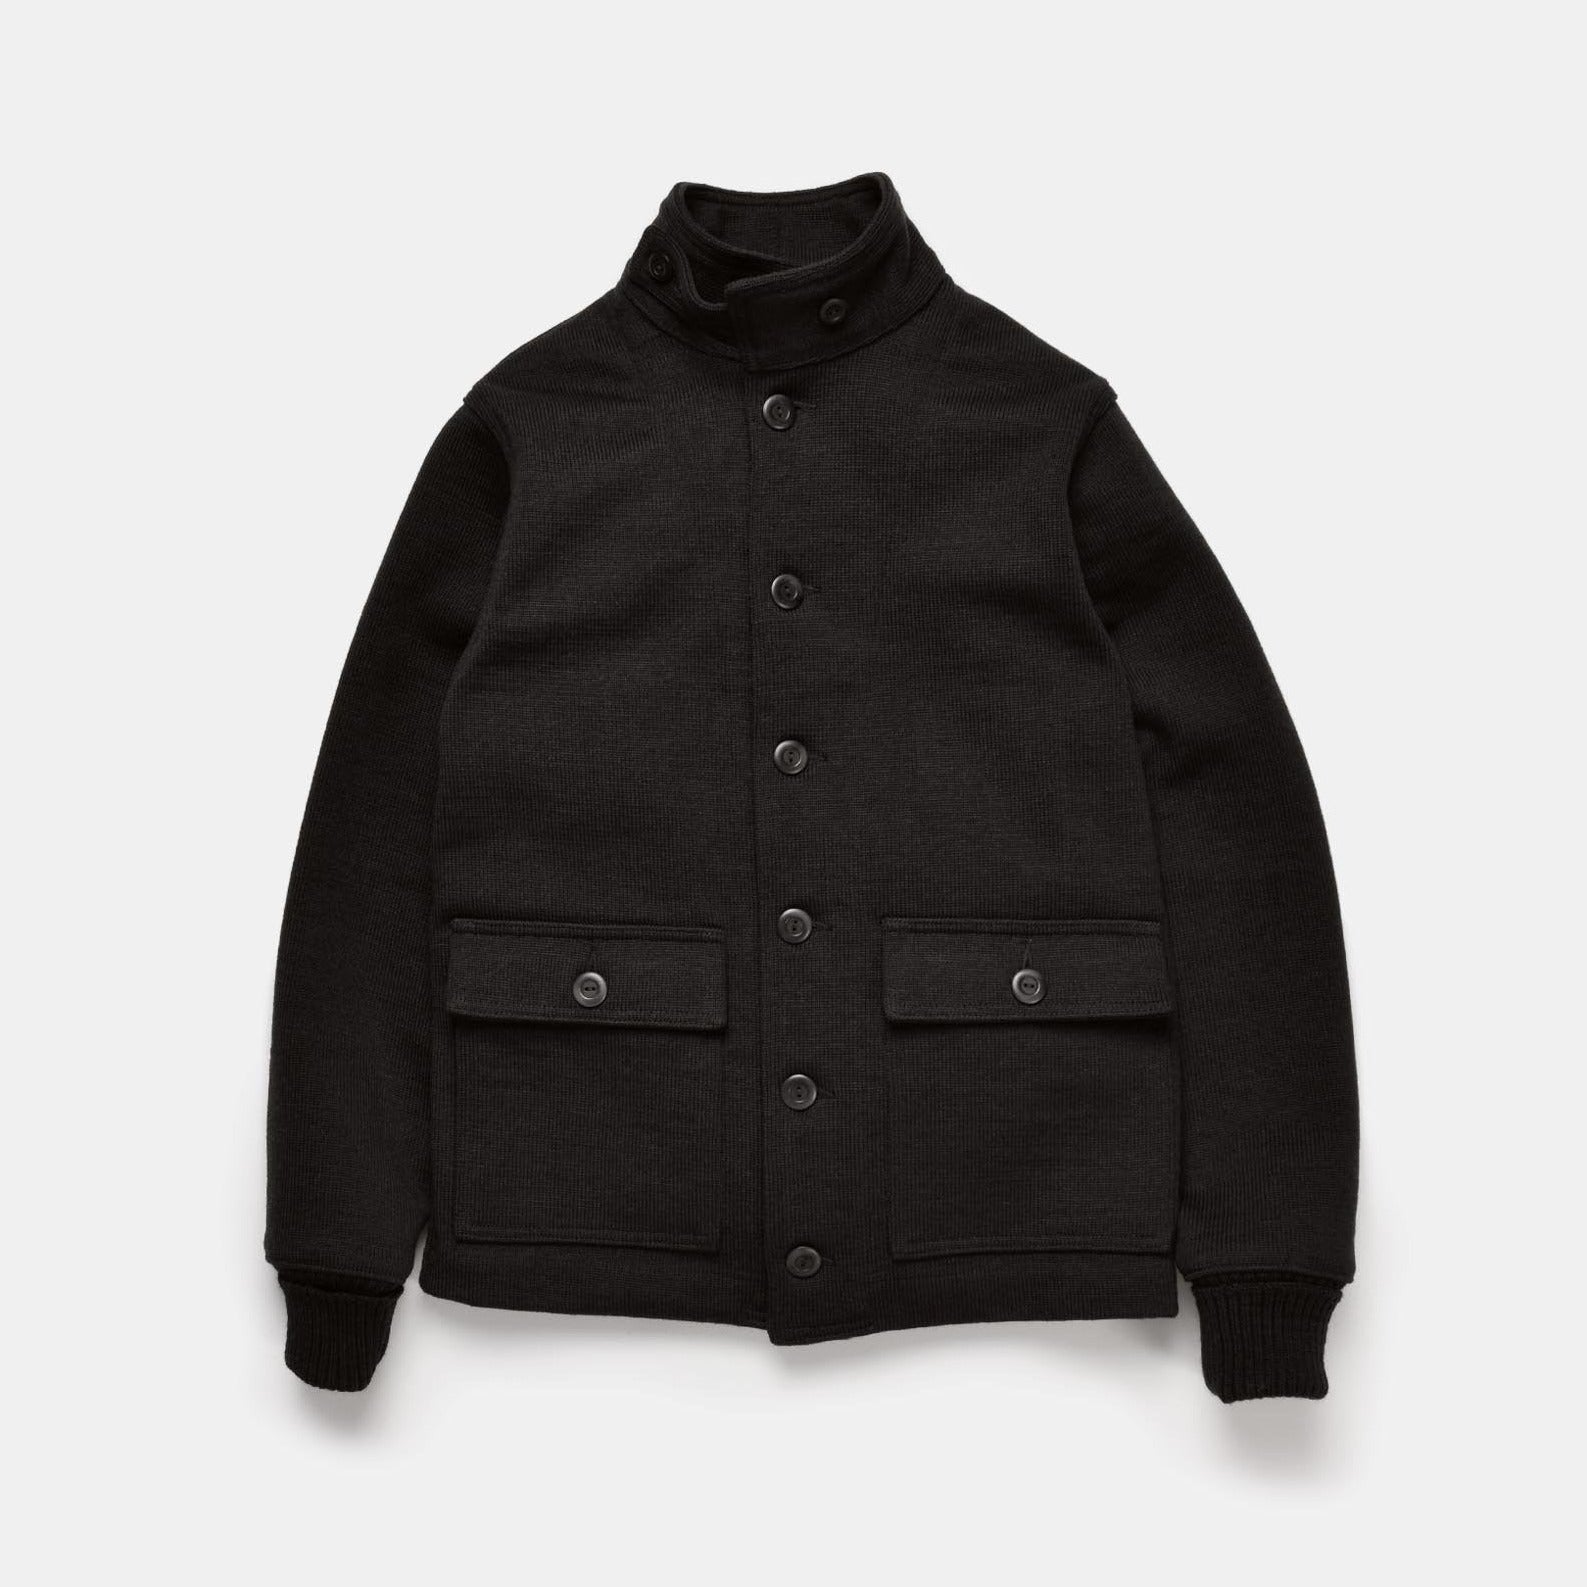 Submariner Sweater Coat - Black